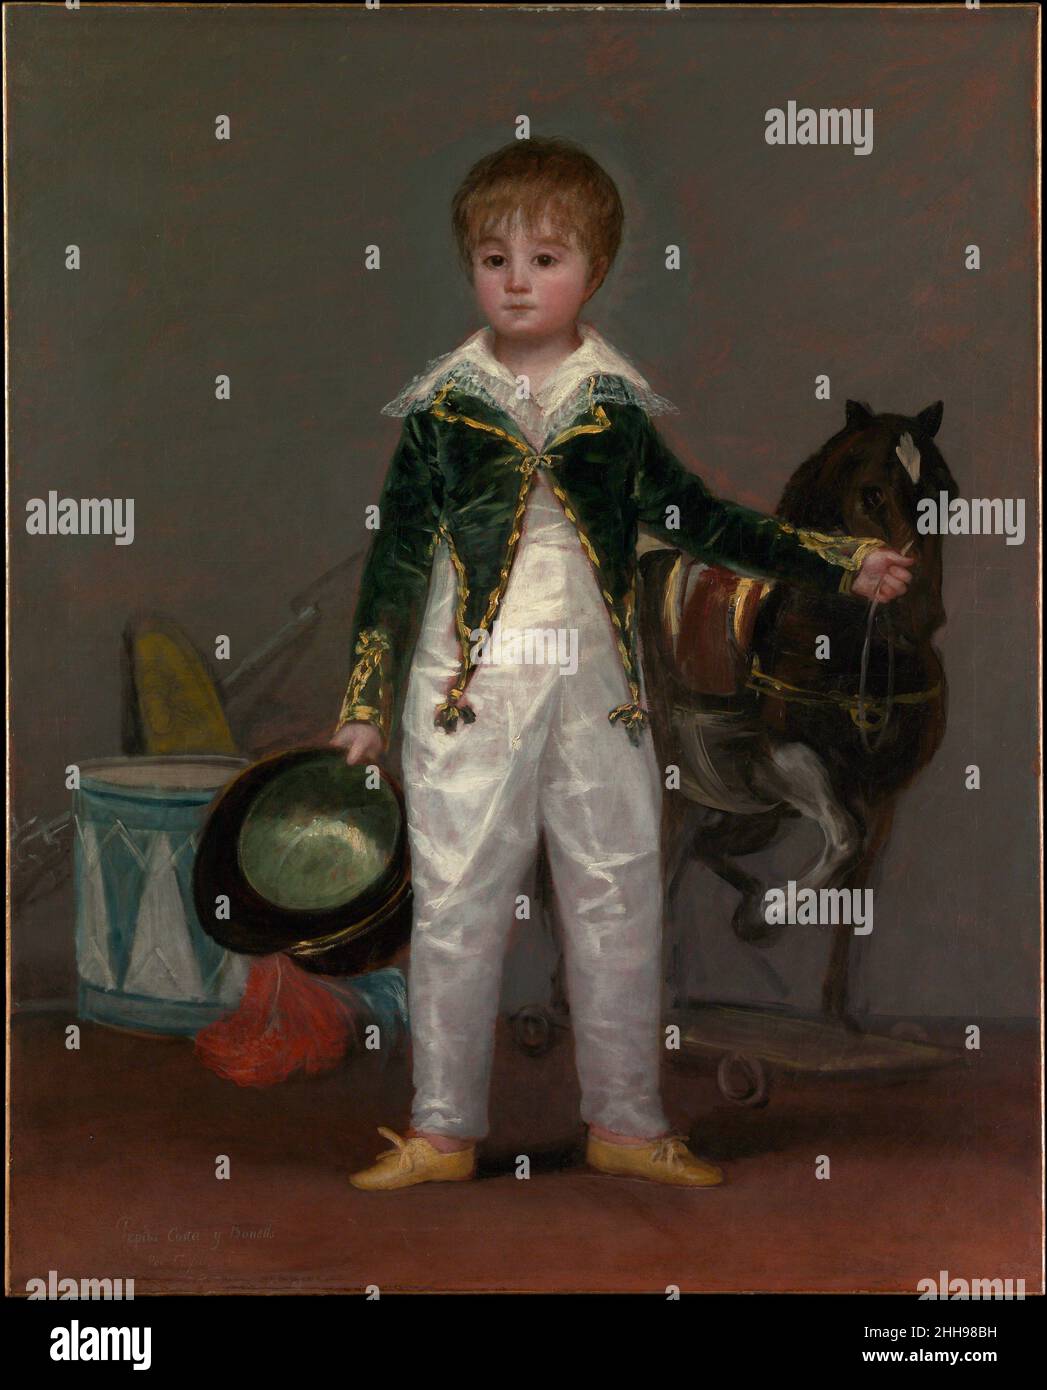 José Costa y Bonells (gestorben l870), genannt Pepito Ca. 1810 Goya (Francisco de Goya y Lucientes) Spanisch das schillernde Weiß der aufwendigen Kinderkostüme, die in Imitation einer Soldatenuniform geschnitten wurde, unterscheidet ihn von den zusätzlichen militärischen Referenzen, die als Spielzeug gärt sind: Ein Pferd, eine Trommel und ein Gewehr mit festem Bajonett. Dieses außergewöhnliche Porträt steht in engem Zusammenhang mit Werken, die Goya kurz nach 1810 gemalt hat und auf den Spanischen Unabhängigkeitskrieg (1808–14) anzuspielen scheint. Der Vater des Sitters, Rafael Costa de Quintana, der unter dem Spitznamen Pepito bekannt war, war Arzt des Königs Ferdinand VII., seines Motten Stockfoto